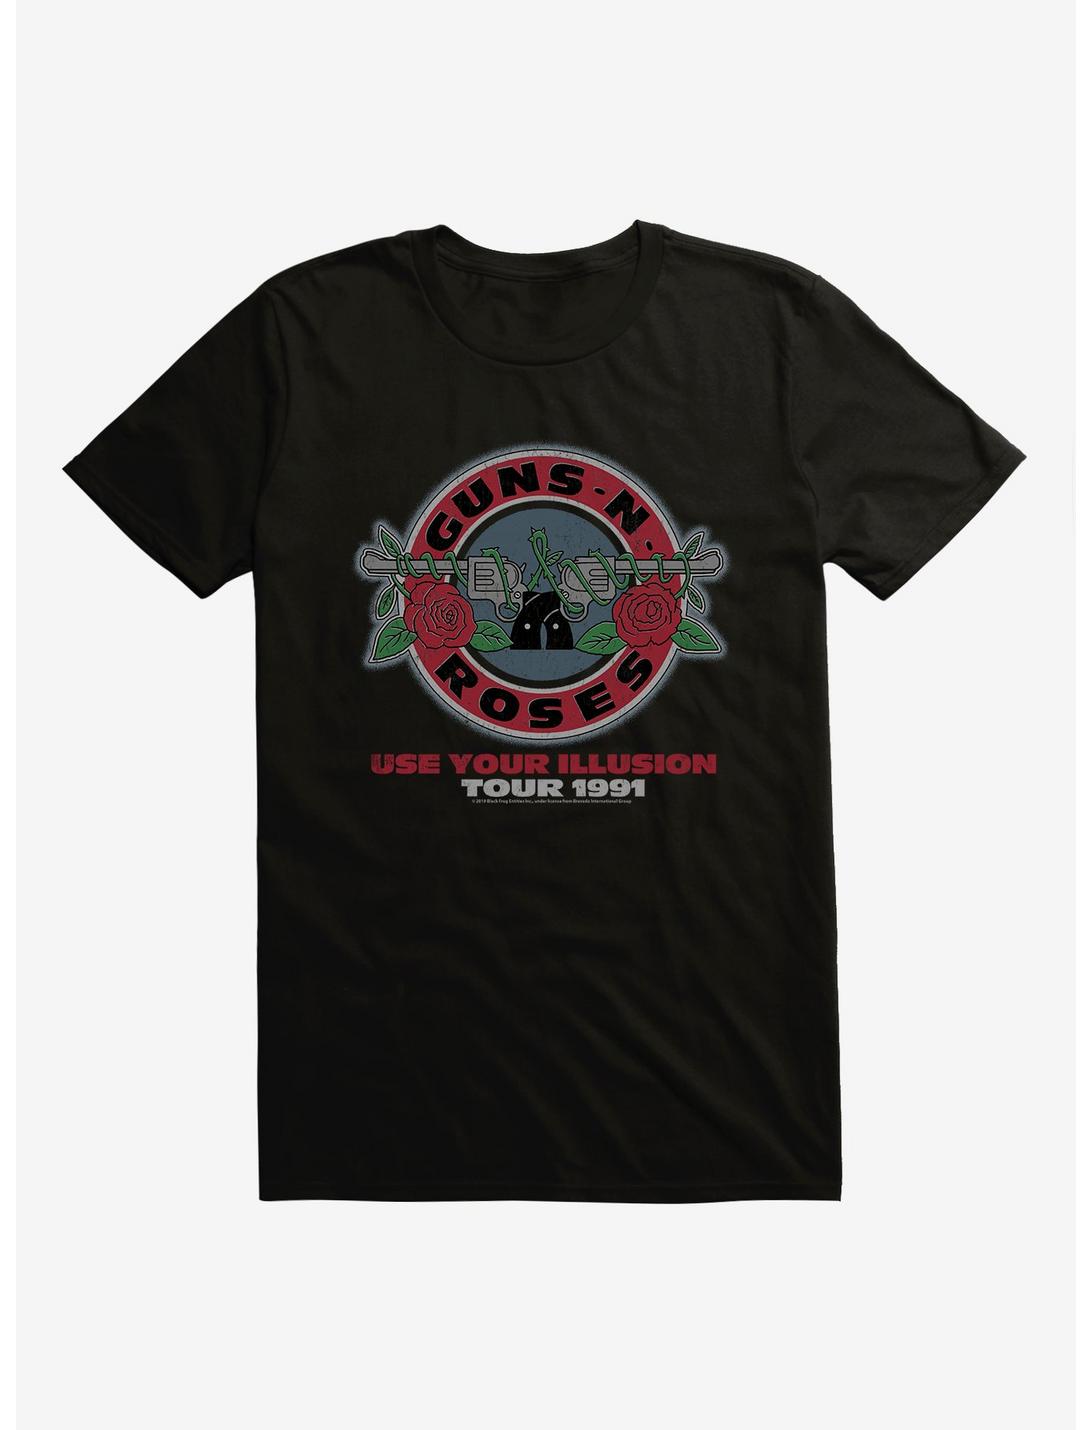 Guns N' Roses Use Your Illusion Tour 1991 T-Shirt, BLACK, hi-res